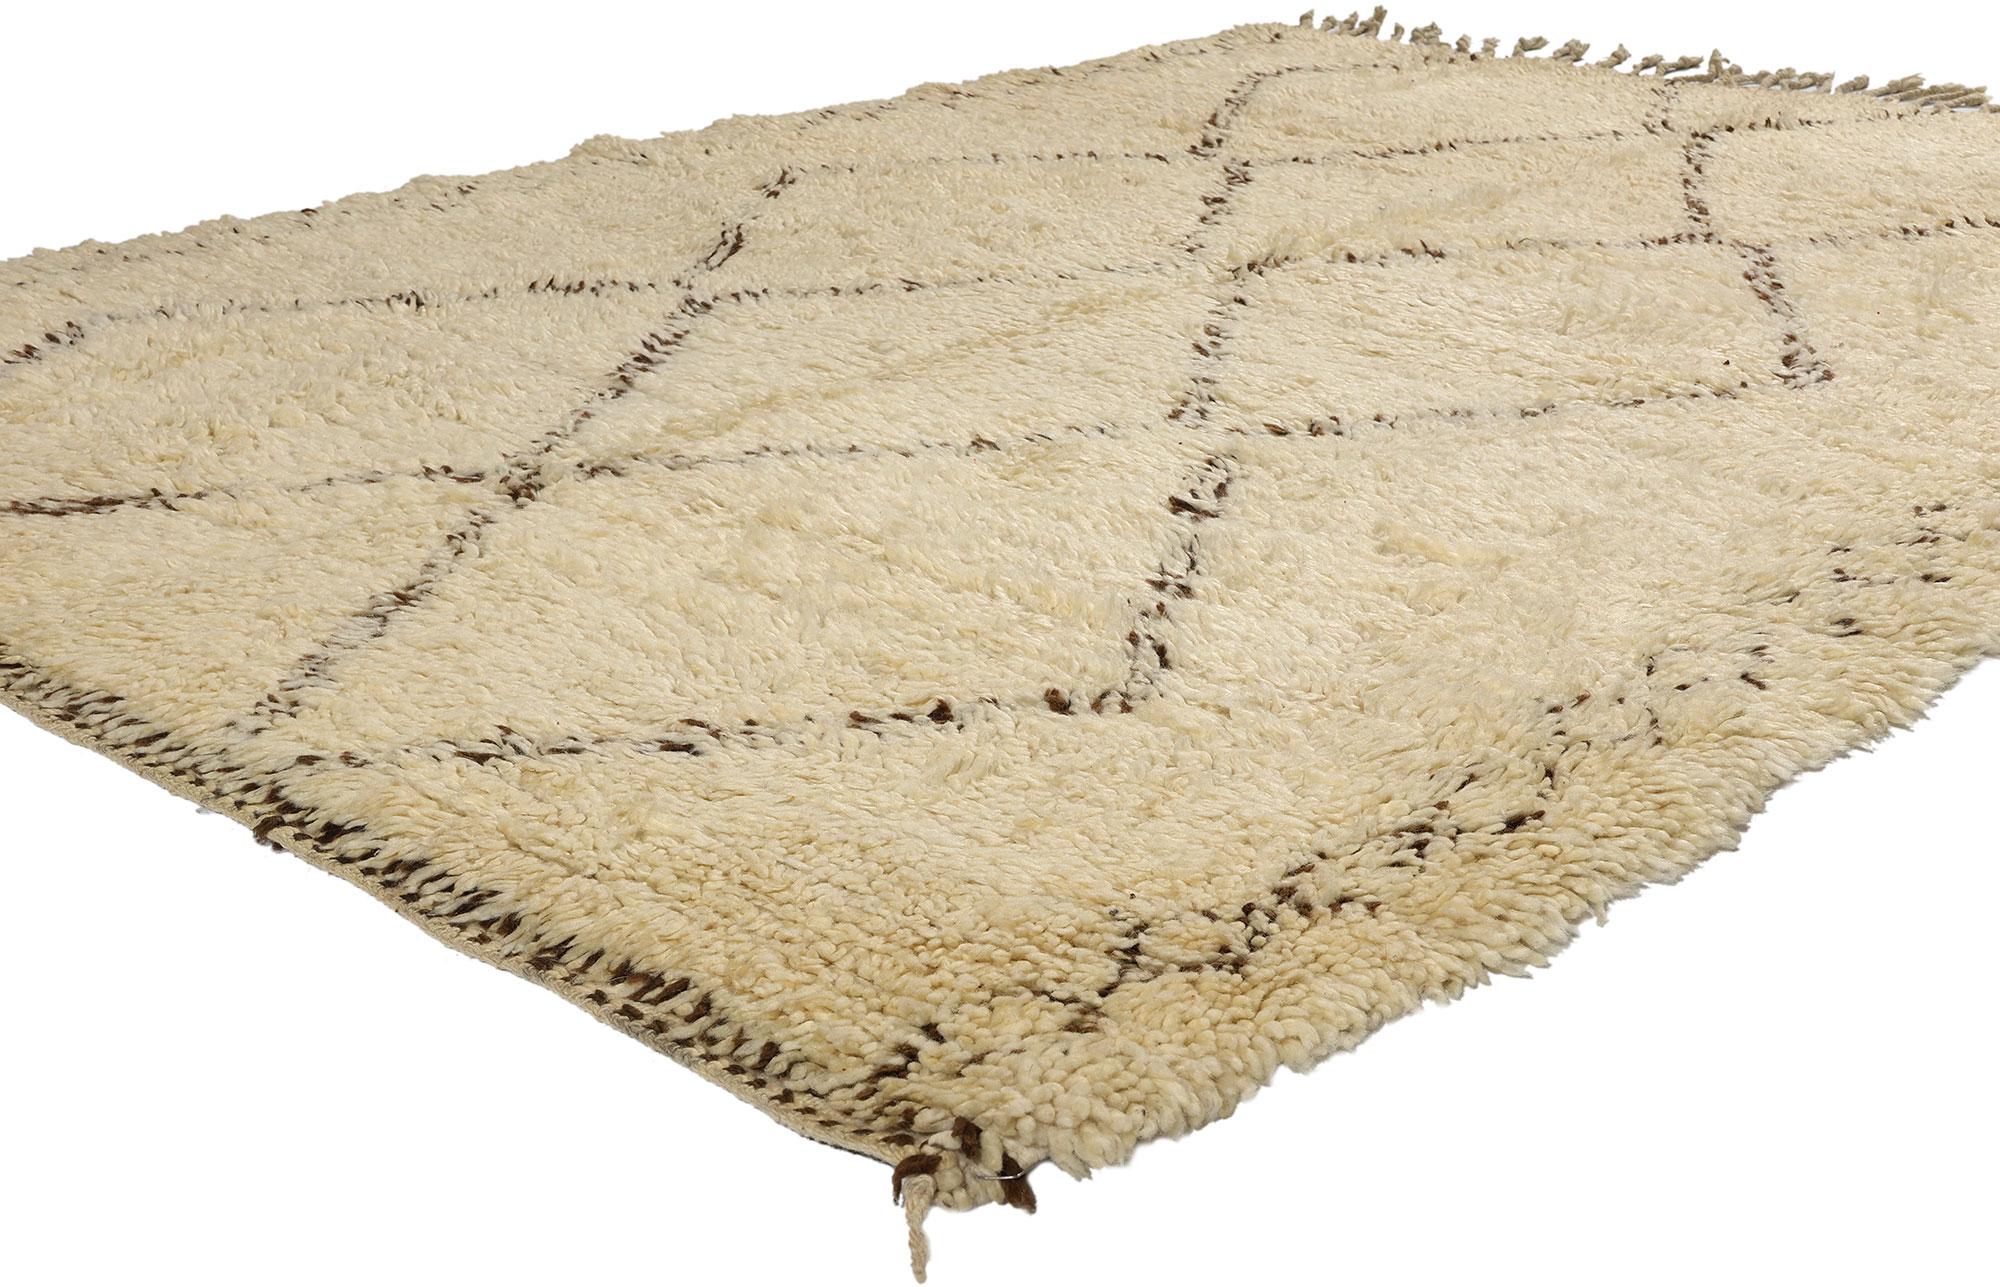 21748 Tapis vintage marocain Beni Ourain, 05'07 x 07'05. Provenant de la tribu estimée des Beni Ourain au Maroc, ces tapis finement travaillés incarnent un profond respect de la tradition, évident dans leur artisanat méticuleux. Fabriquées à partir